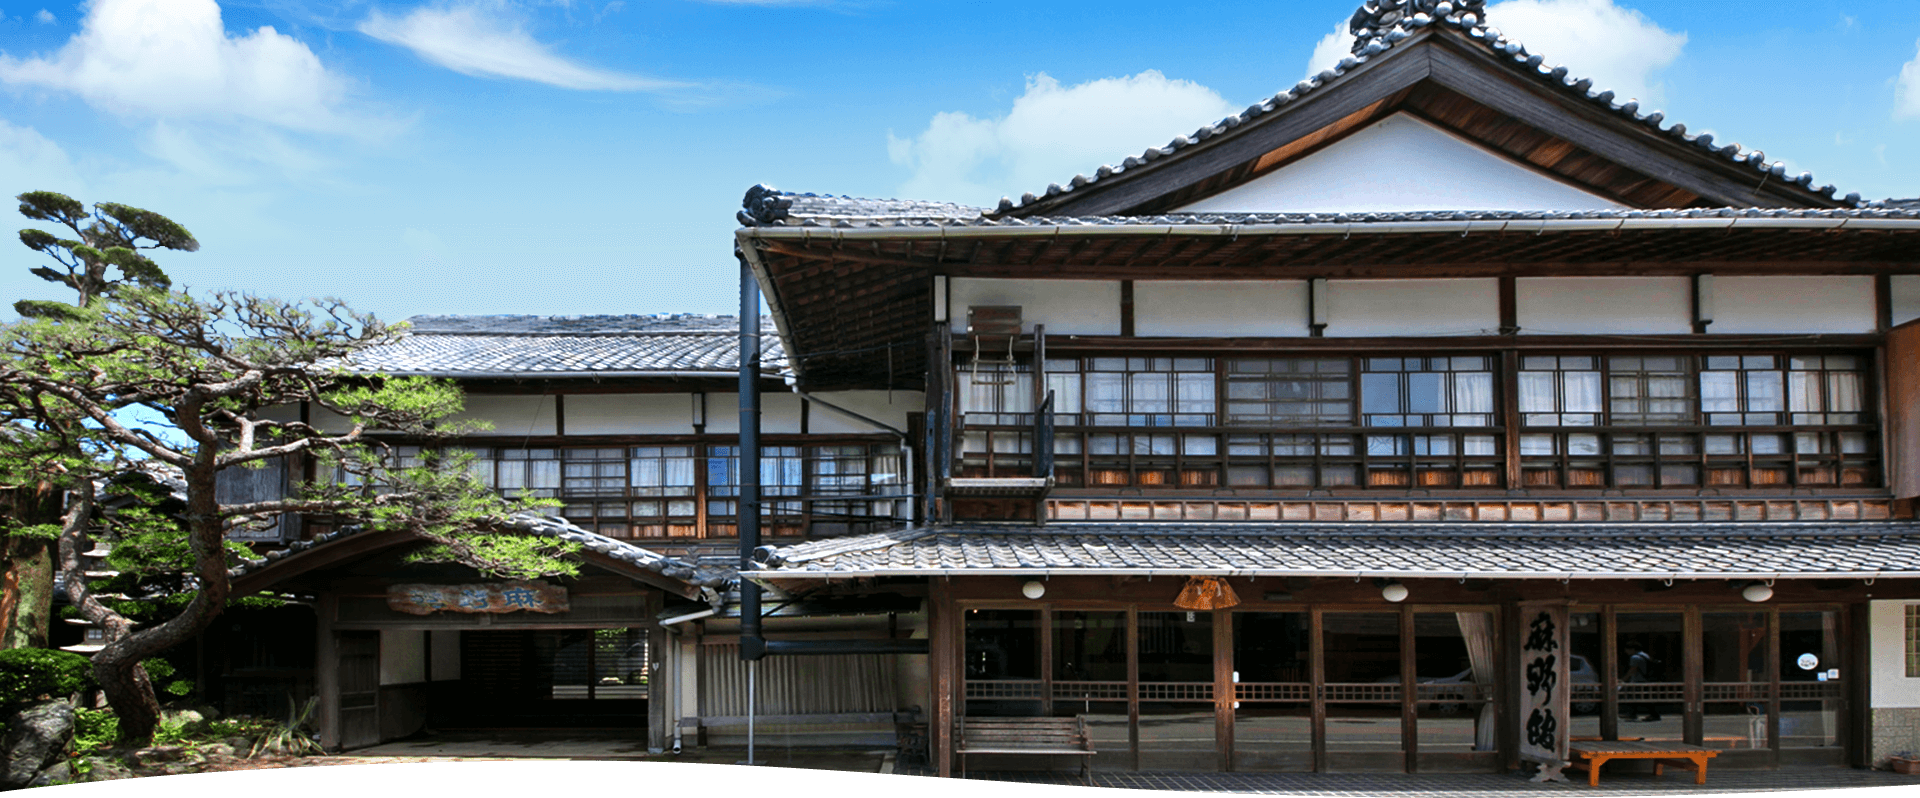 1893년에 창립한 아사노관은 미에현 이세에 있는 일본의 문화를 소중히 하는 역사 있는 료칸입니다.